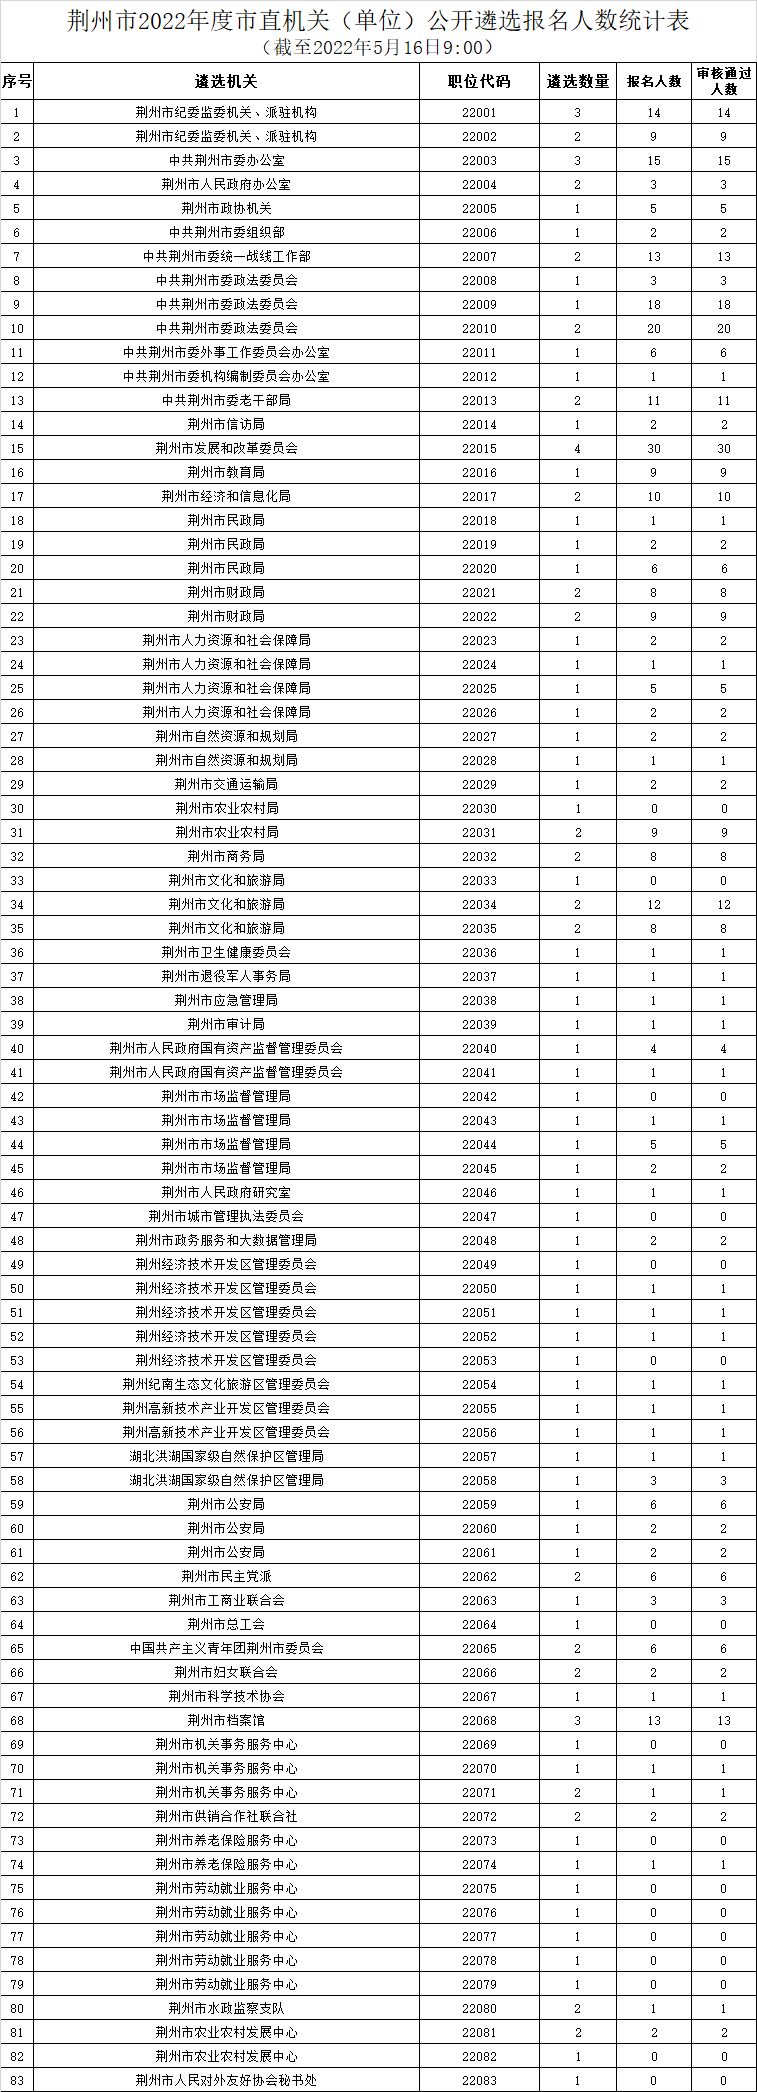 荆州市报名数据.png